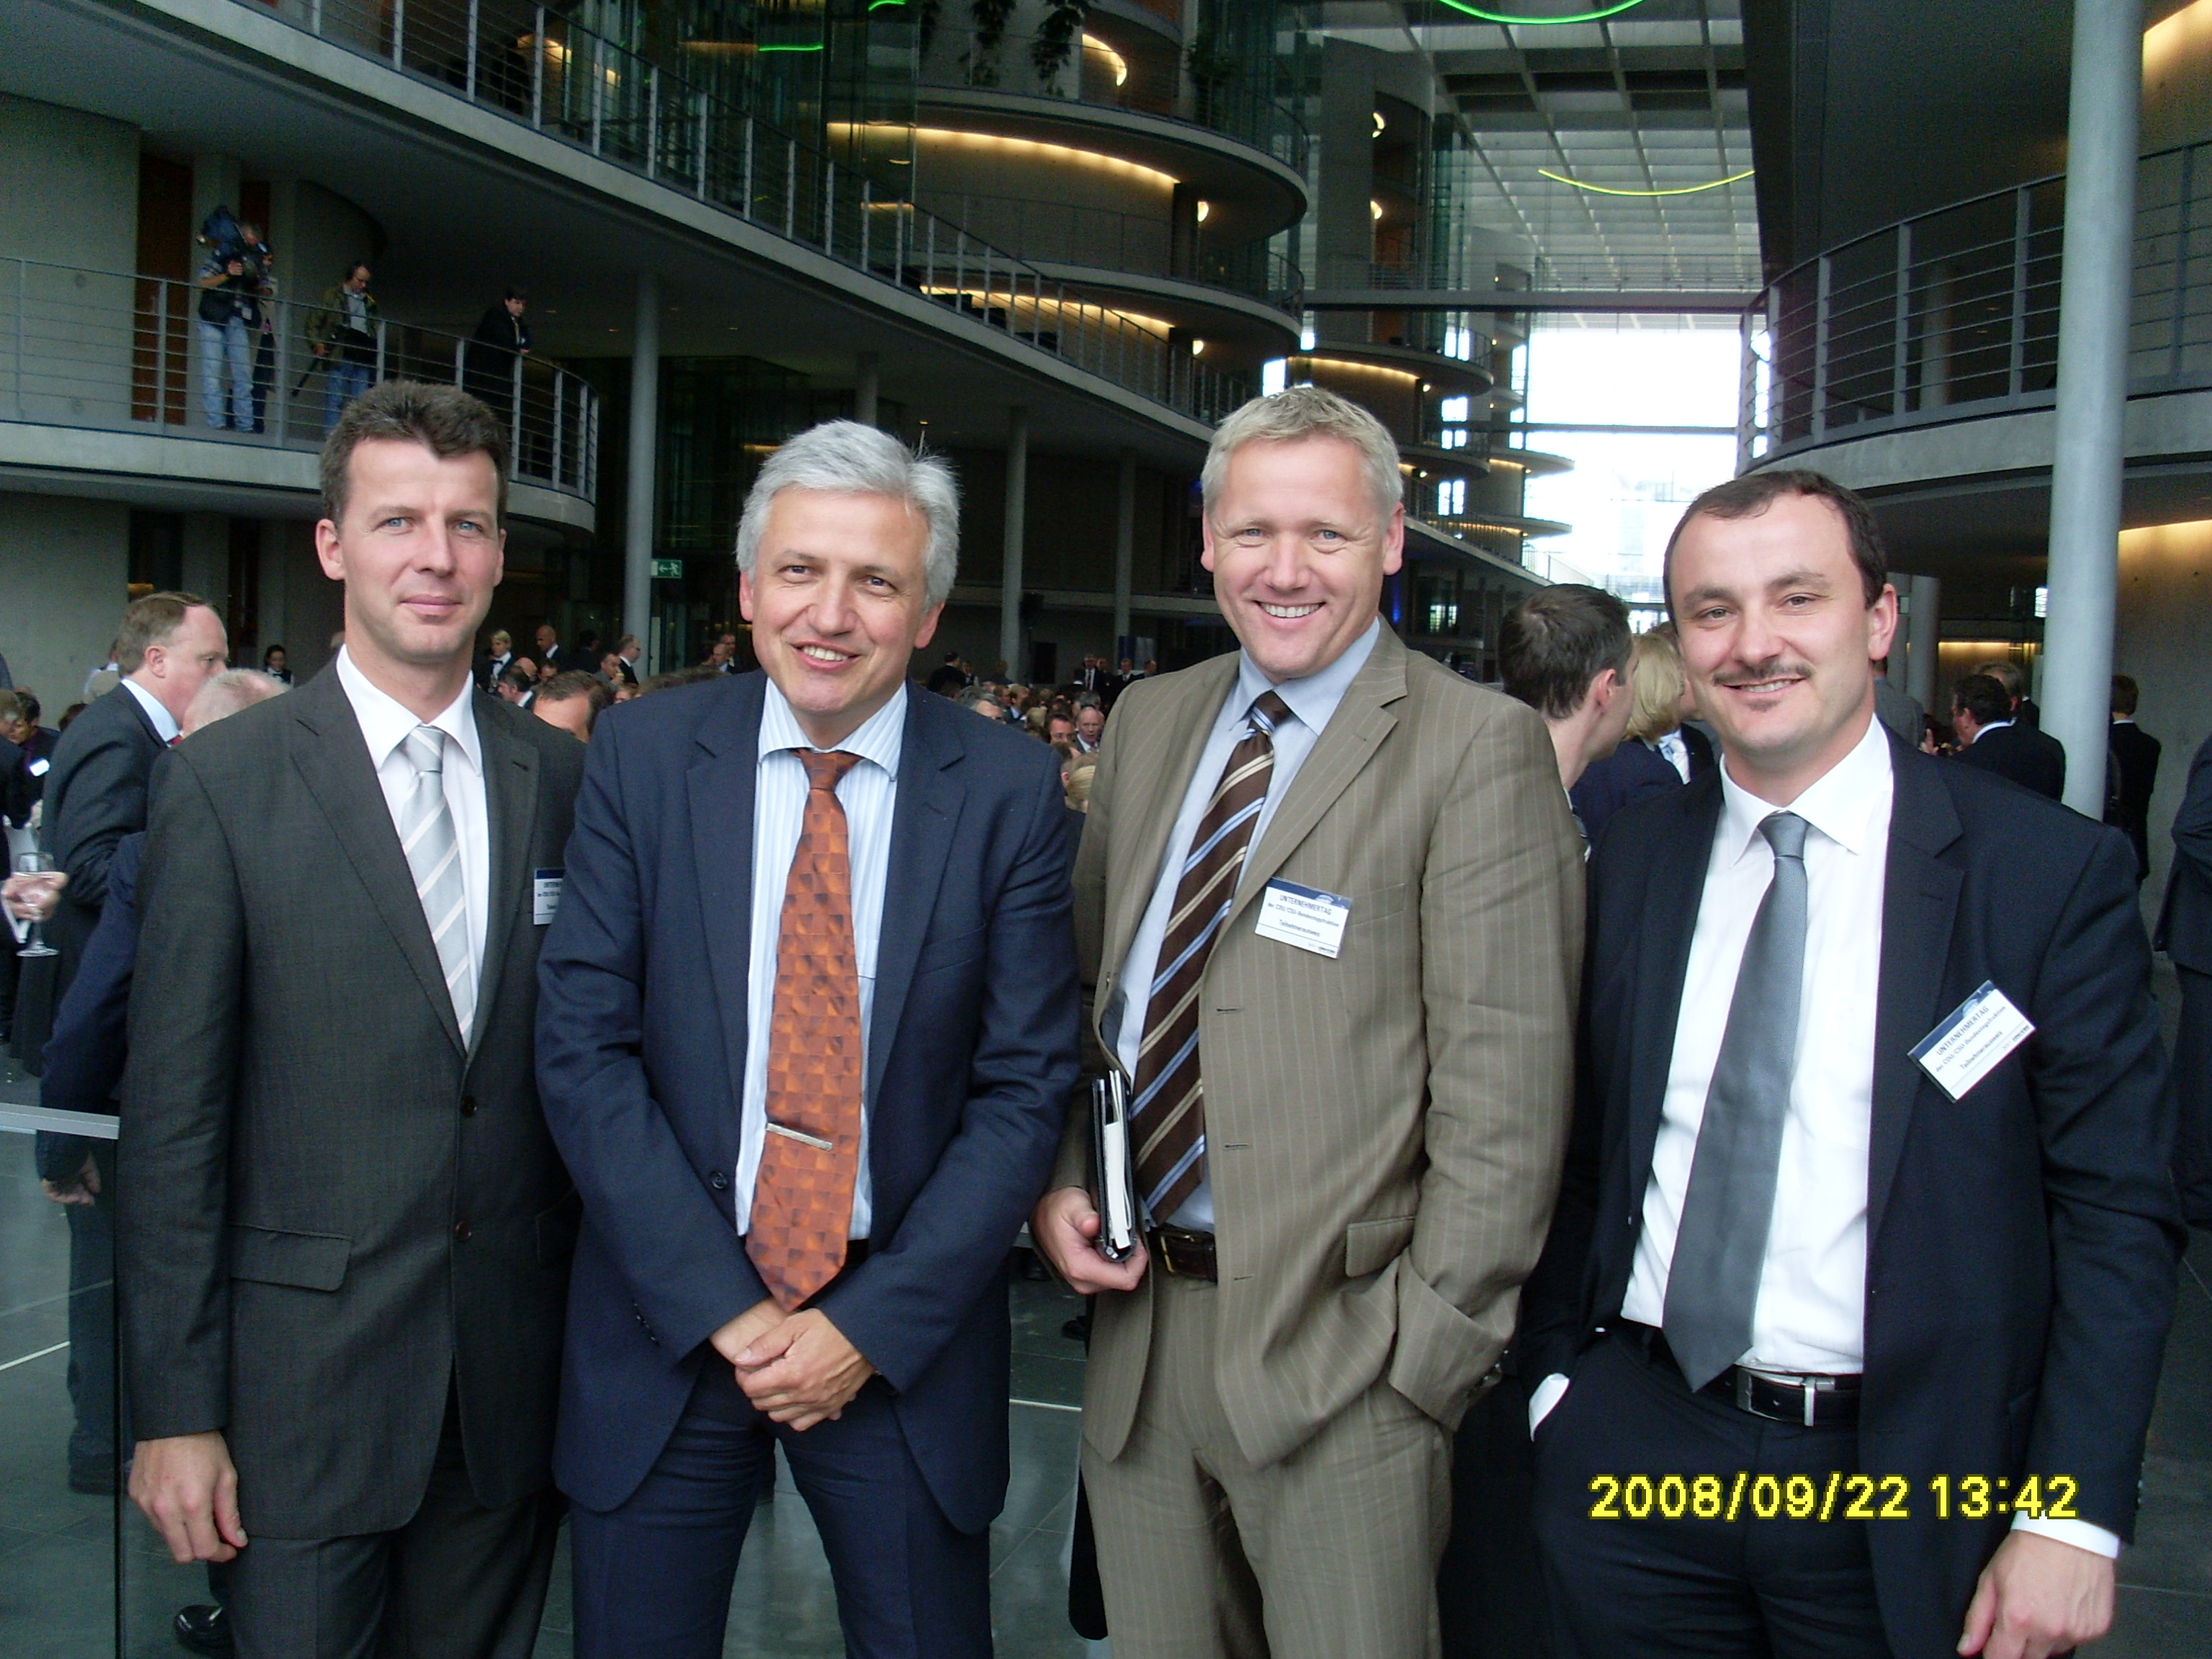 Manfred Kolbe mit den Herren Borchers, Khne und Zieschank im Paul-Lbe-Haus des Deutschen Bundestages